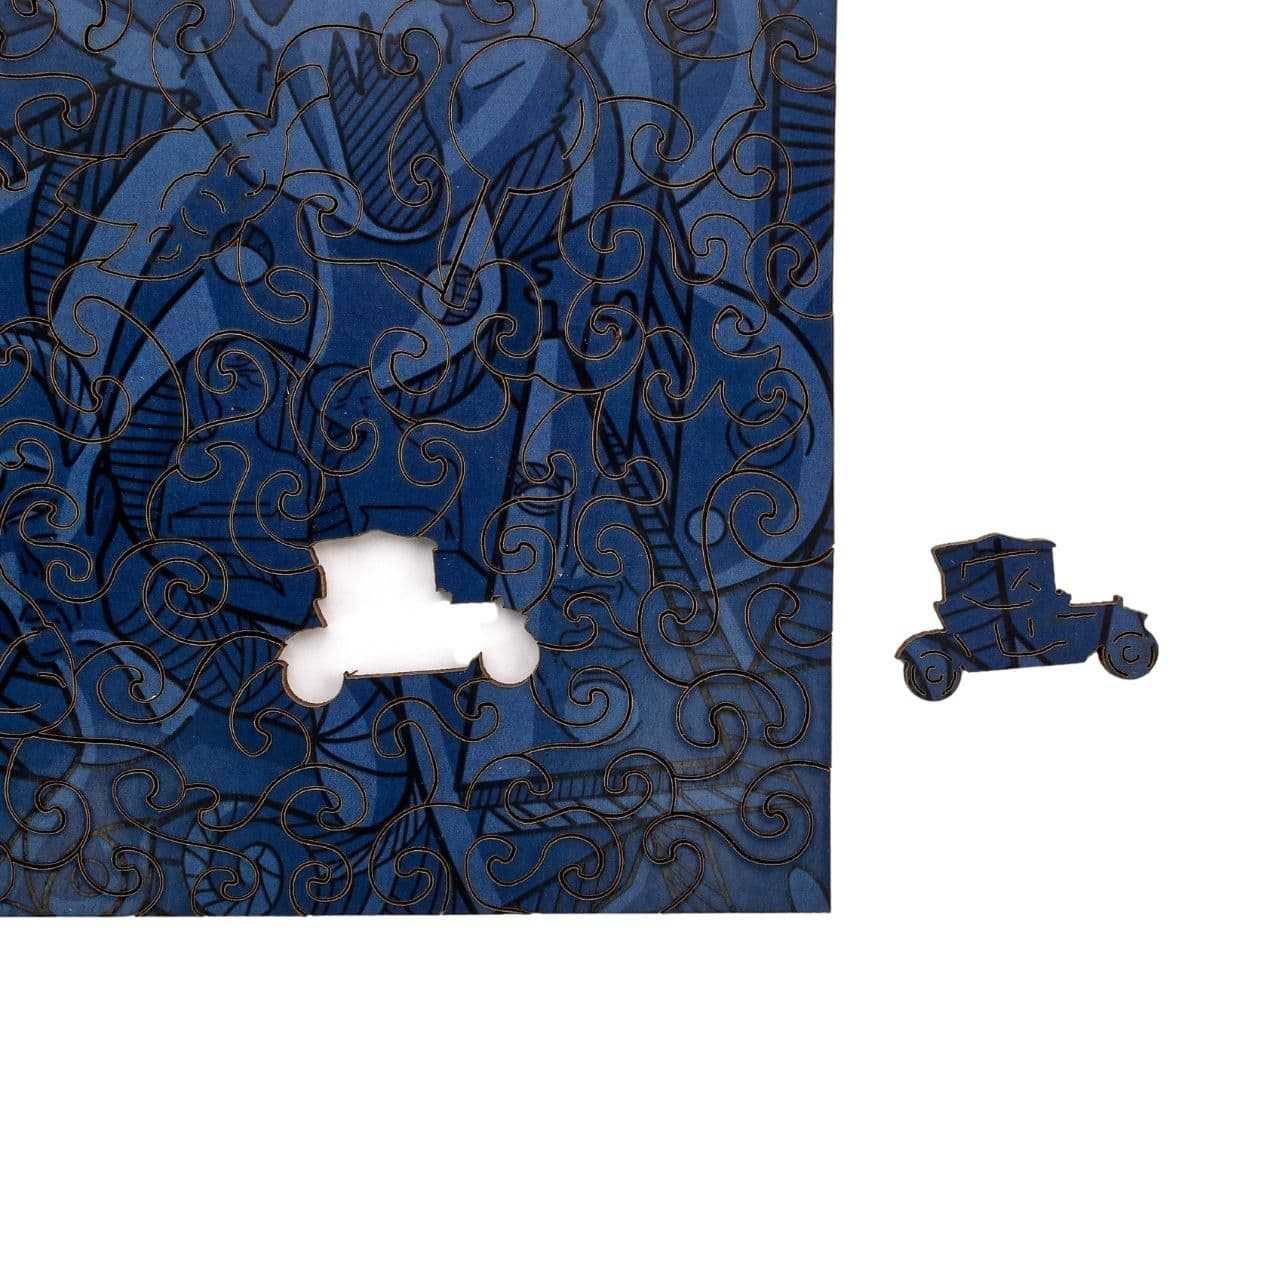 Dalí Wooden Puzzle | Wooden Art Puzzles Active Puzzles